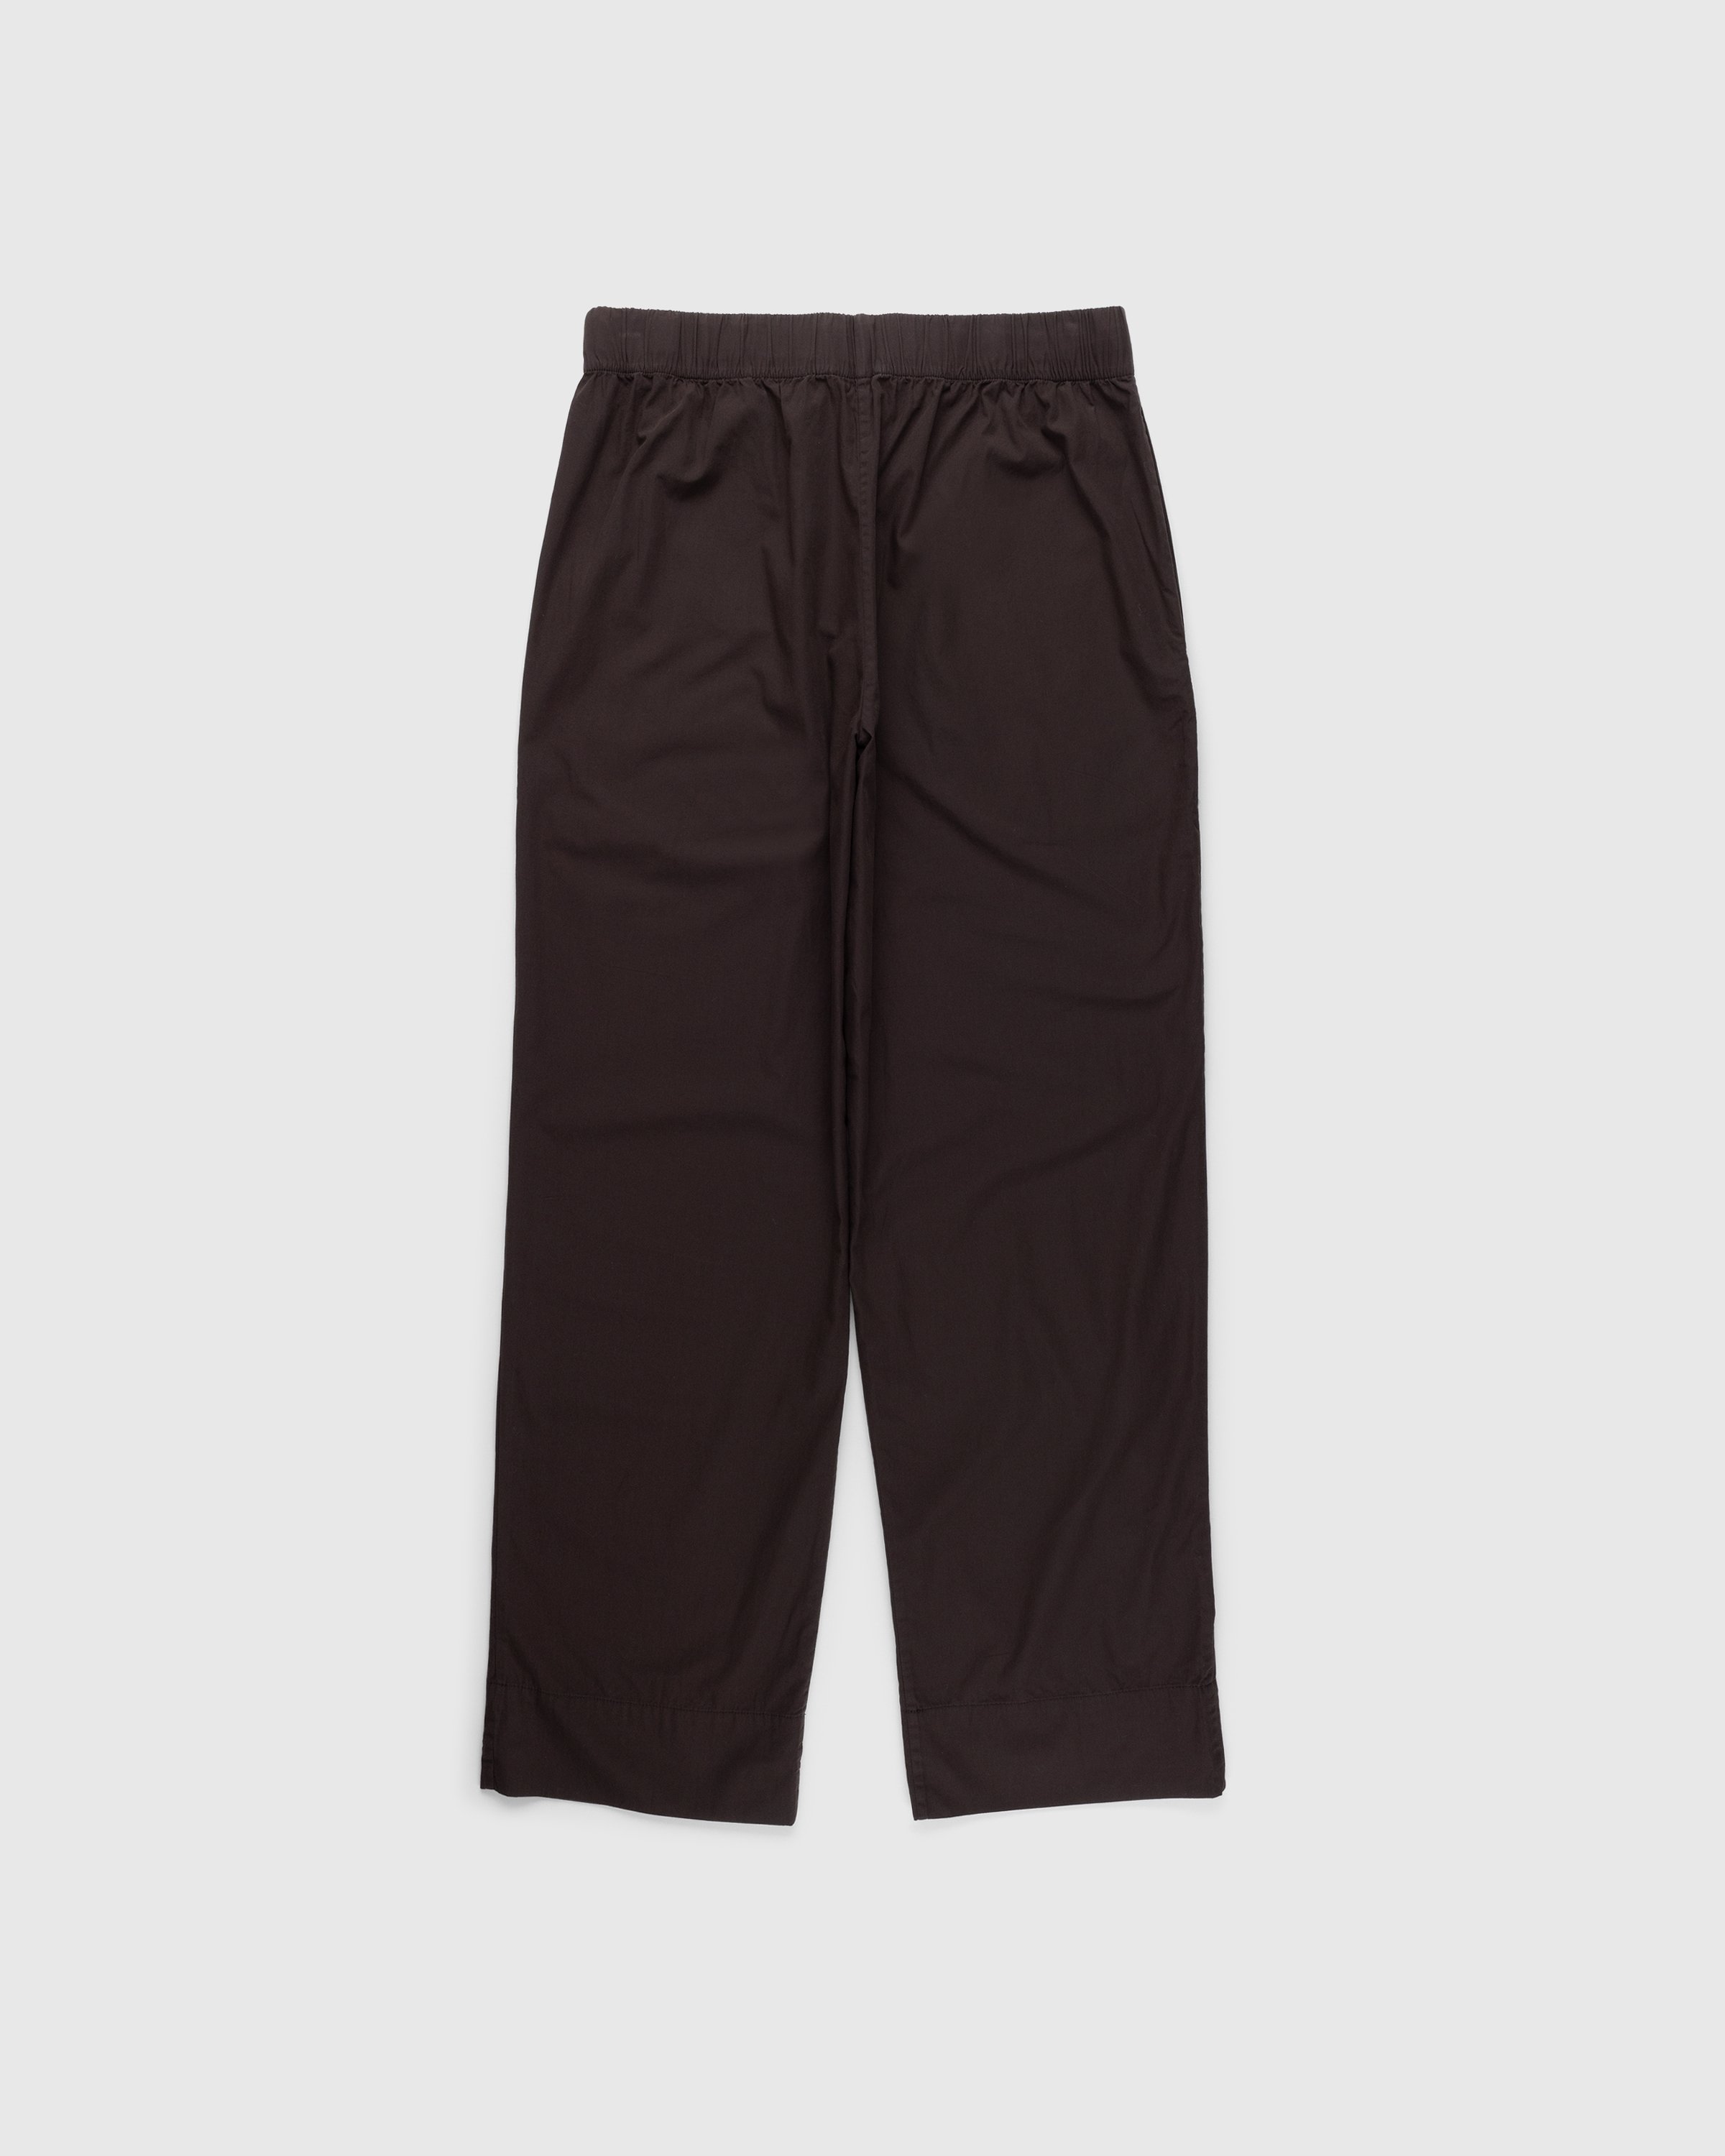 Tekla - Cotton Poplin Pyjamas Pants Coffee - Clothing - Brown - Image 2